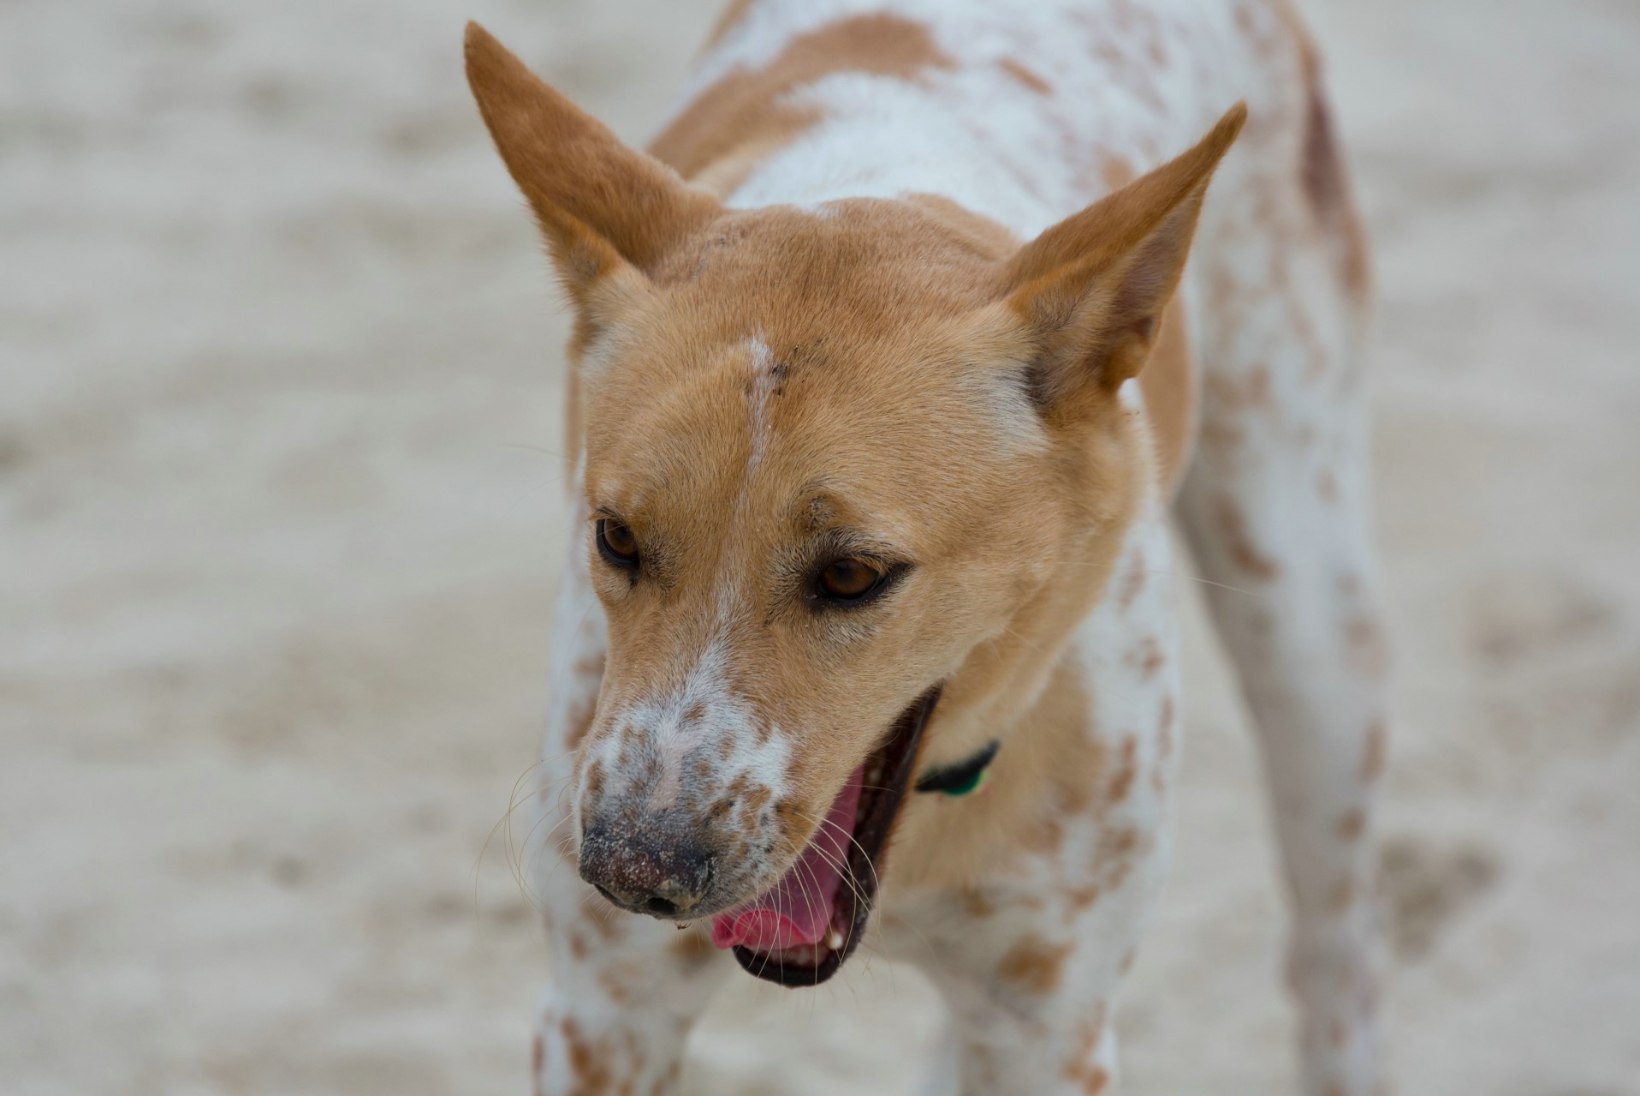 RASKE ÕNNETUS TUNTUD KUURORDIS: hulkuvad koerad ründasid viieaastast poissi